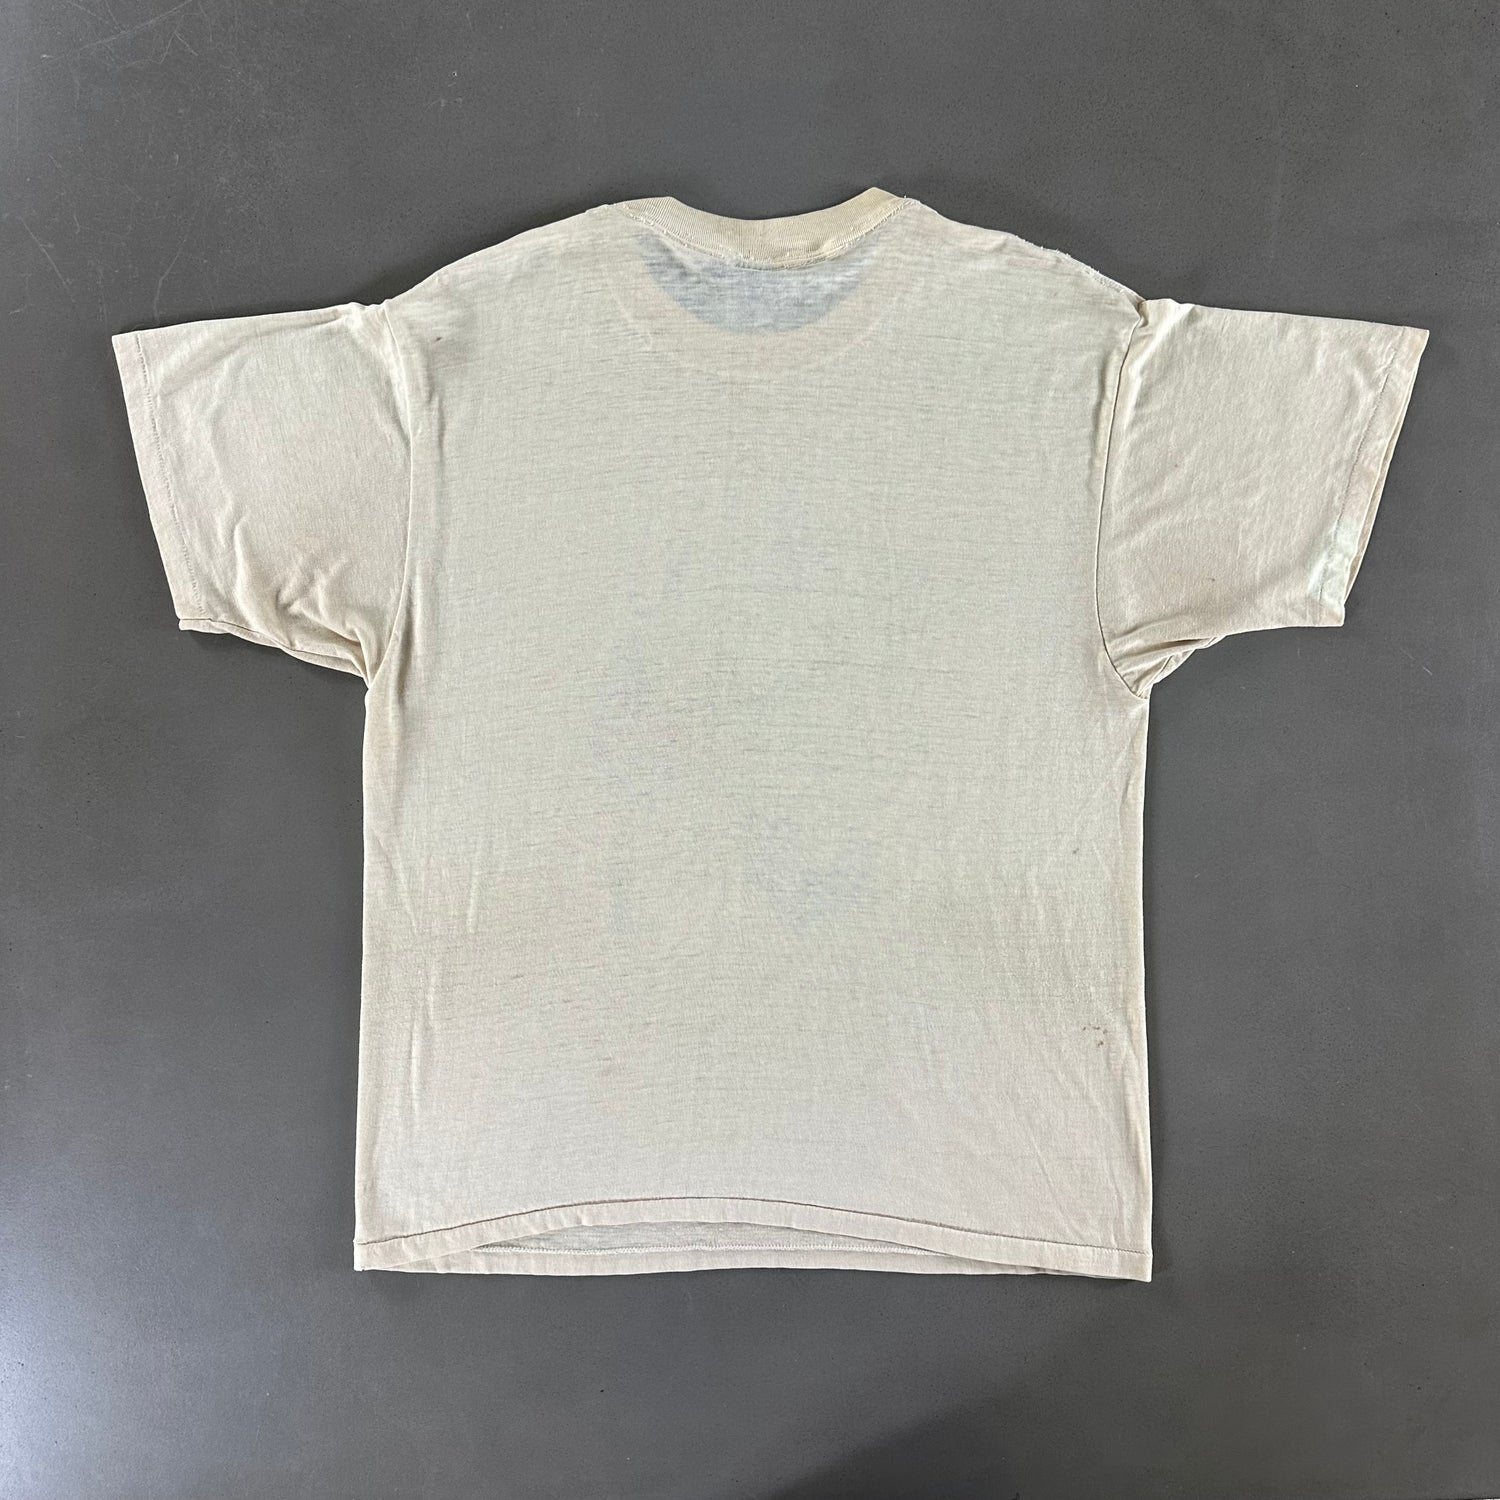 Vintage 1986 Deer T-shirt size XL